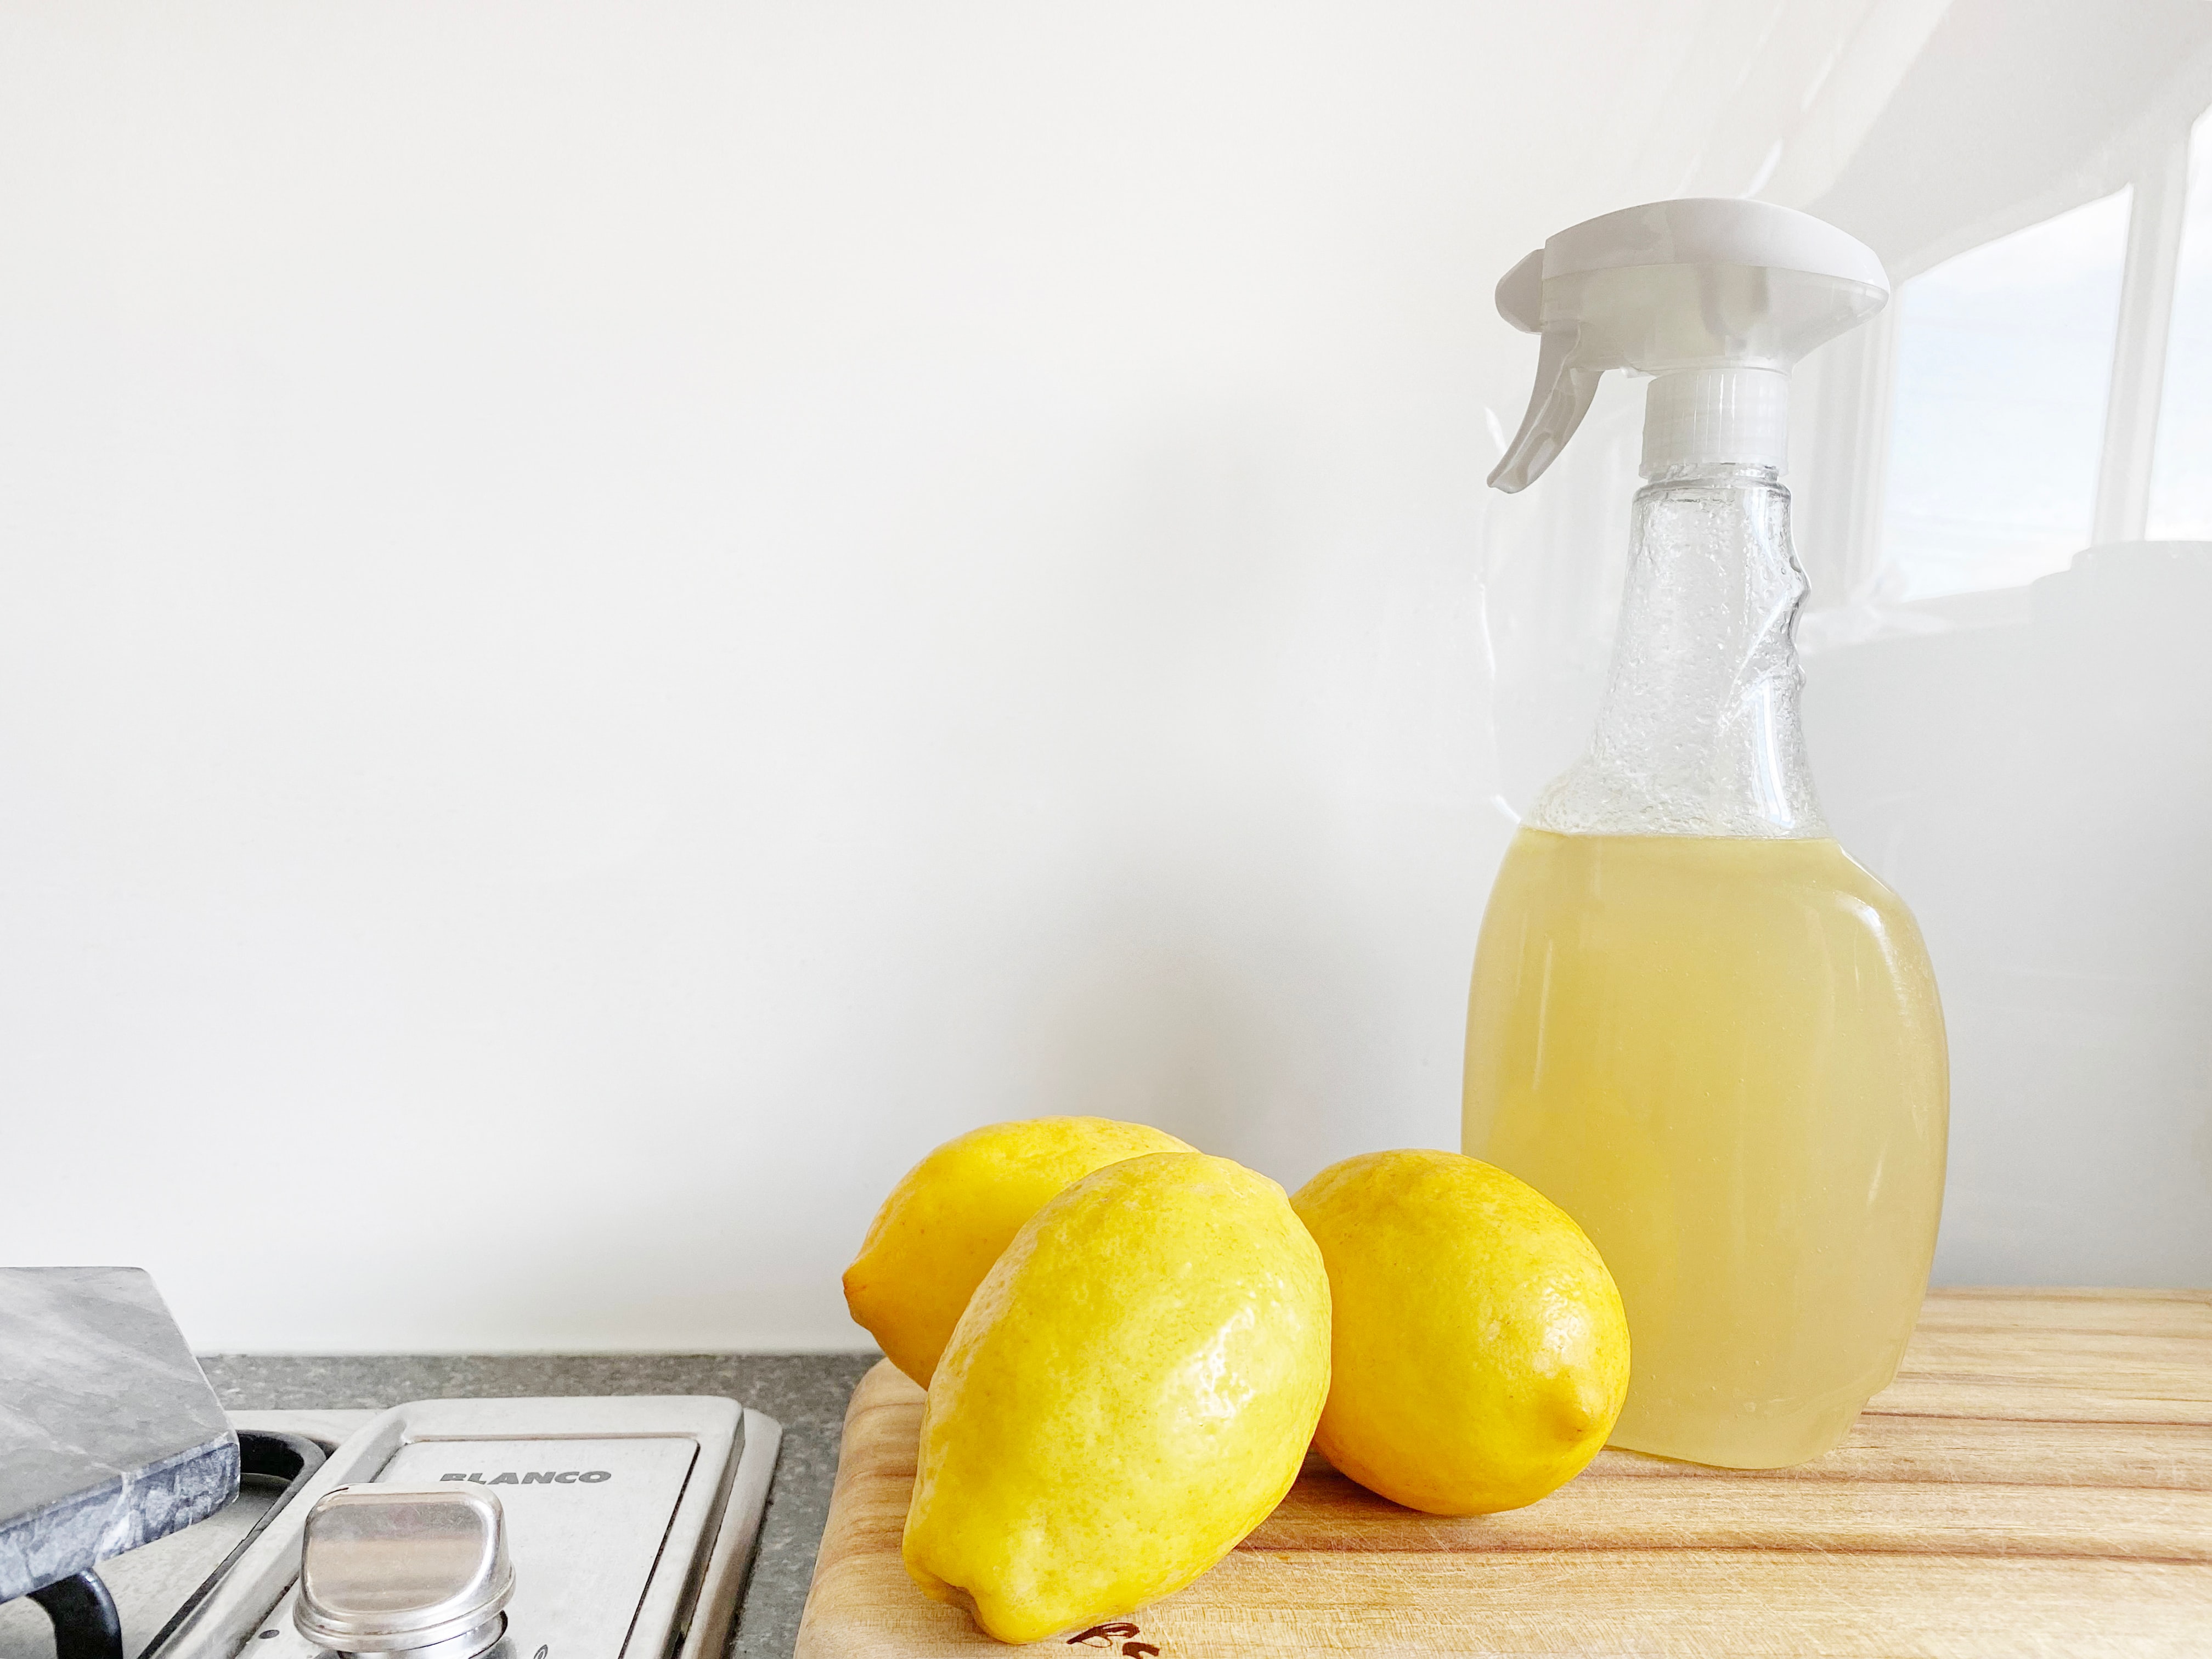 Homemade citrus peel & vinegar multi-purpose cleaner; image by Precious Plastic Melbourne, via Unsplash.com.